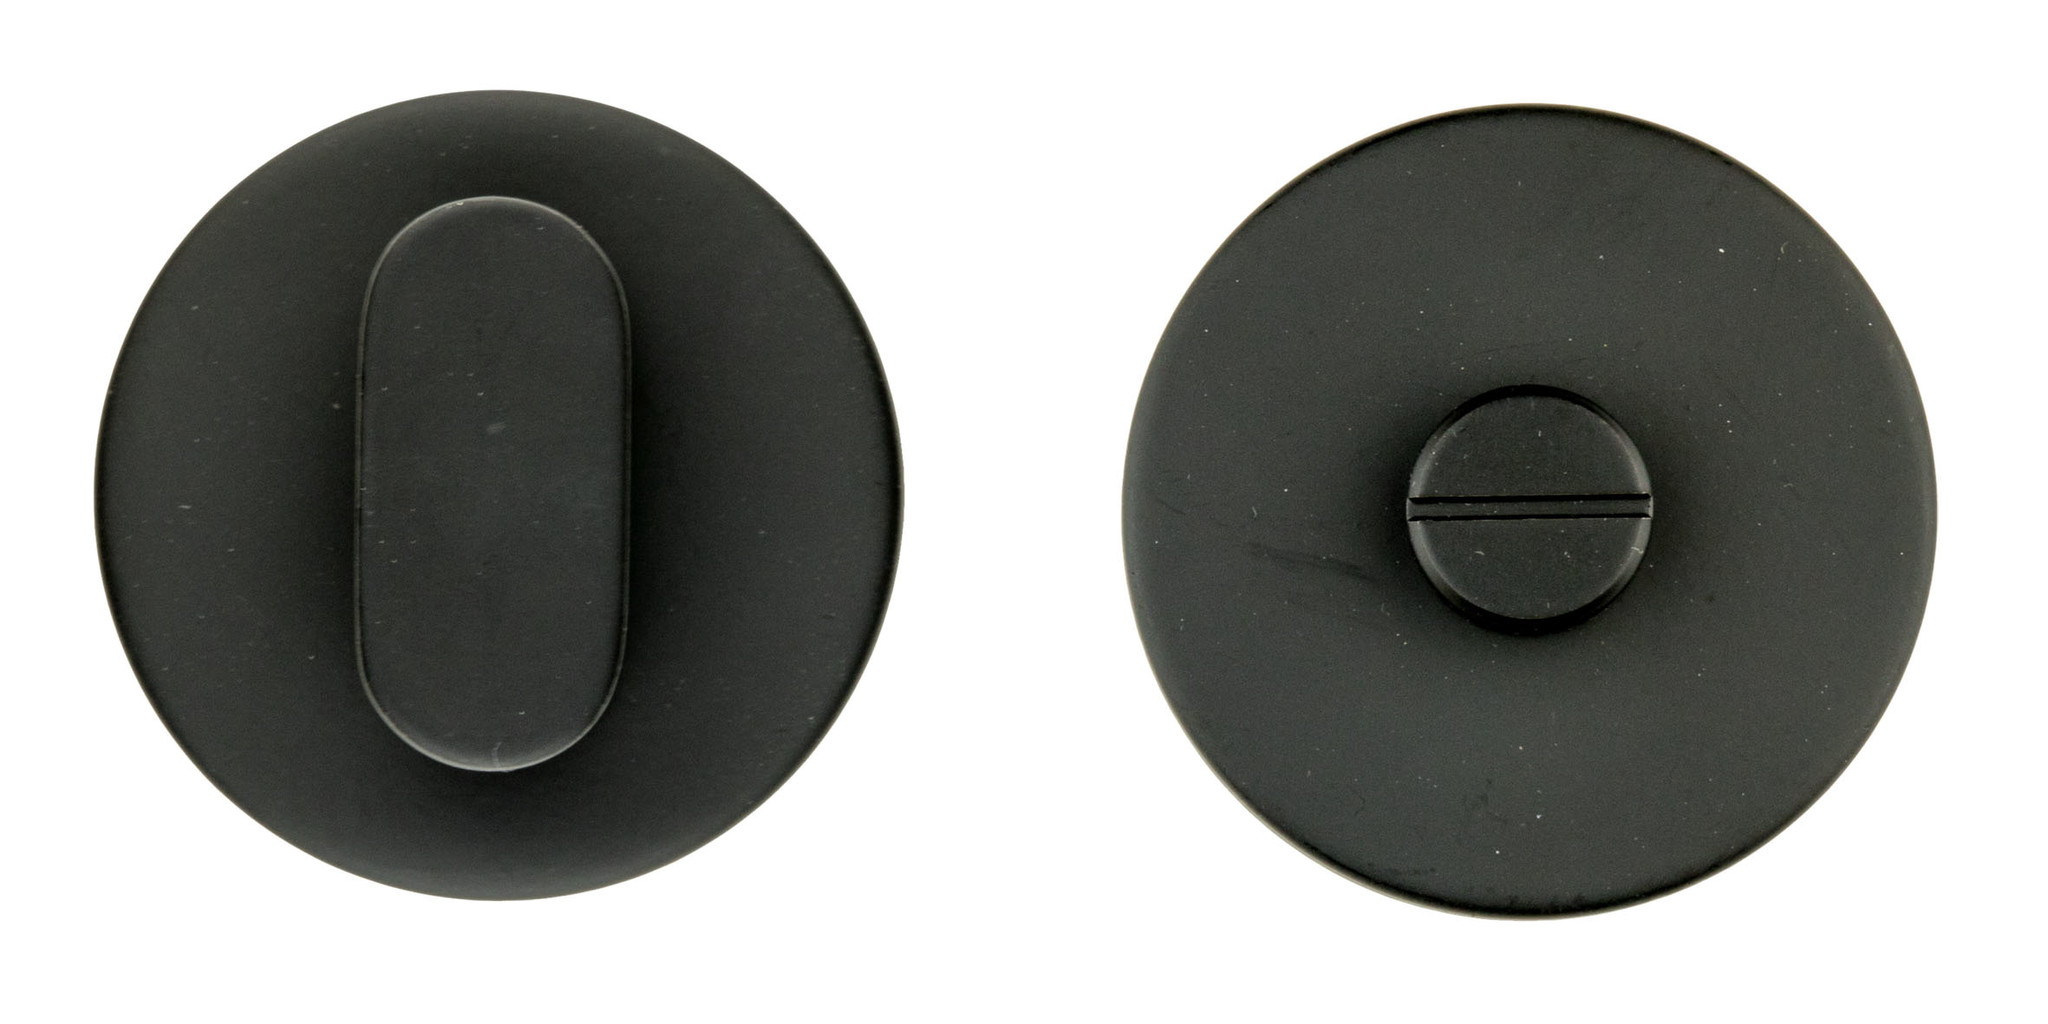 Toilettengarnitur runde Form schwarz ohne rot/weiß